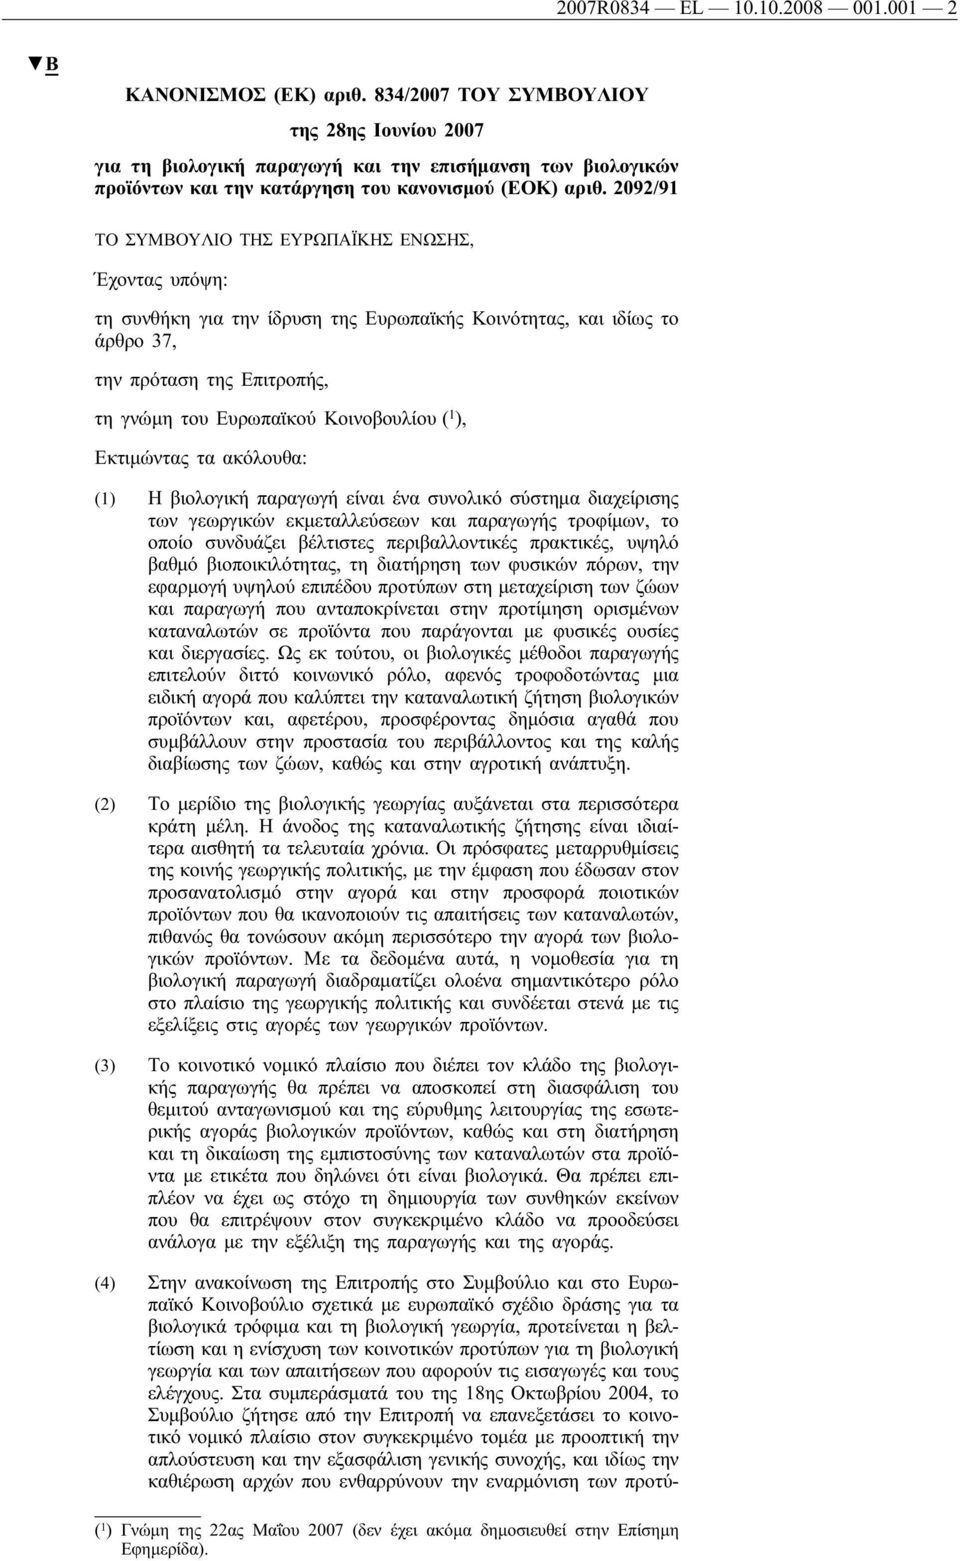 2092/91 ΤΟ ΣΥΜΒΟΥΛΙΟ ΤΗΣ ΕΥΡΩΠΑΪΚΗΣ ΕΝΩΣΗΣ, Έχοντας υπόψη: τη συνθήκη για την ίδρυση της Ευρωπαϊκής Κοινότητας, και ιδίως το άρθρο 37, την πρόταση της Επιτροπής, τη γνώμη του Ευρωπαϊκού Κοινοβουλίου